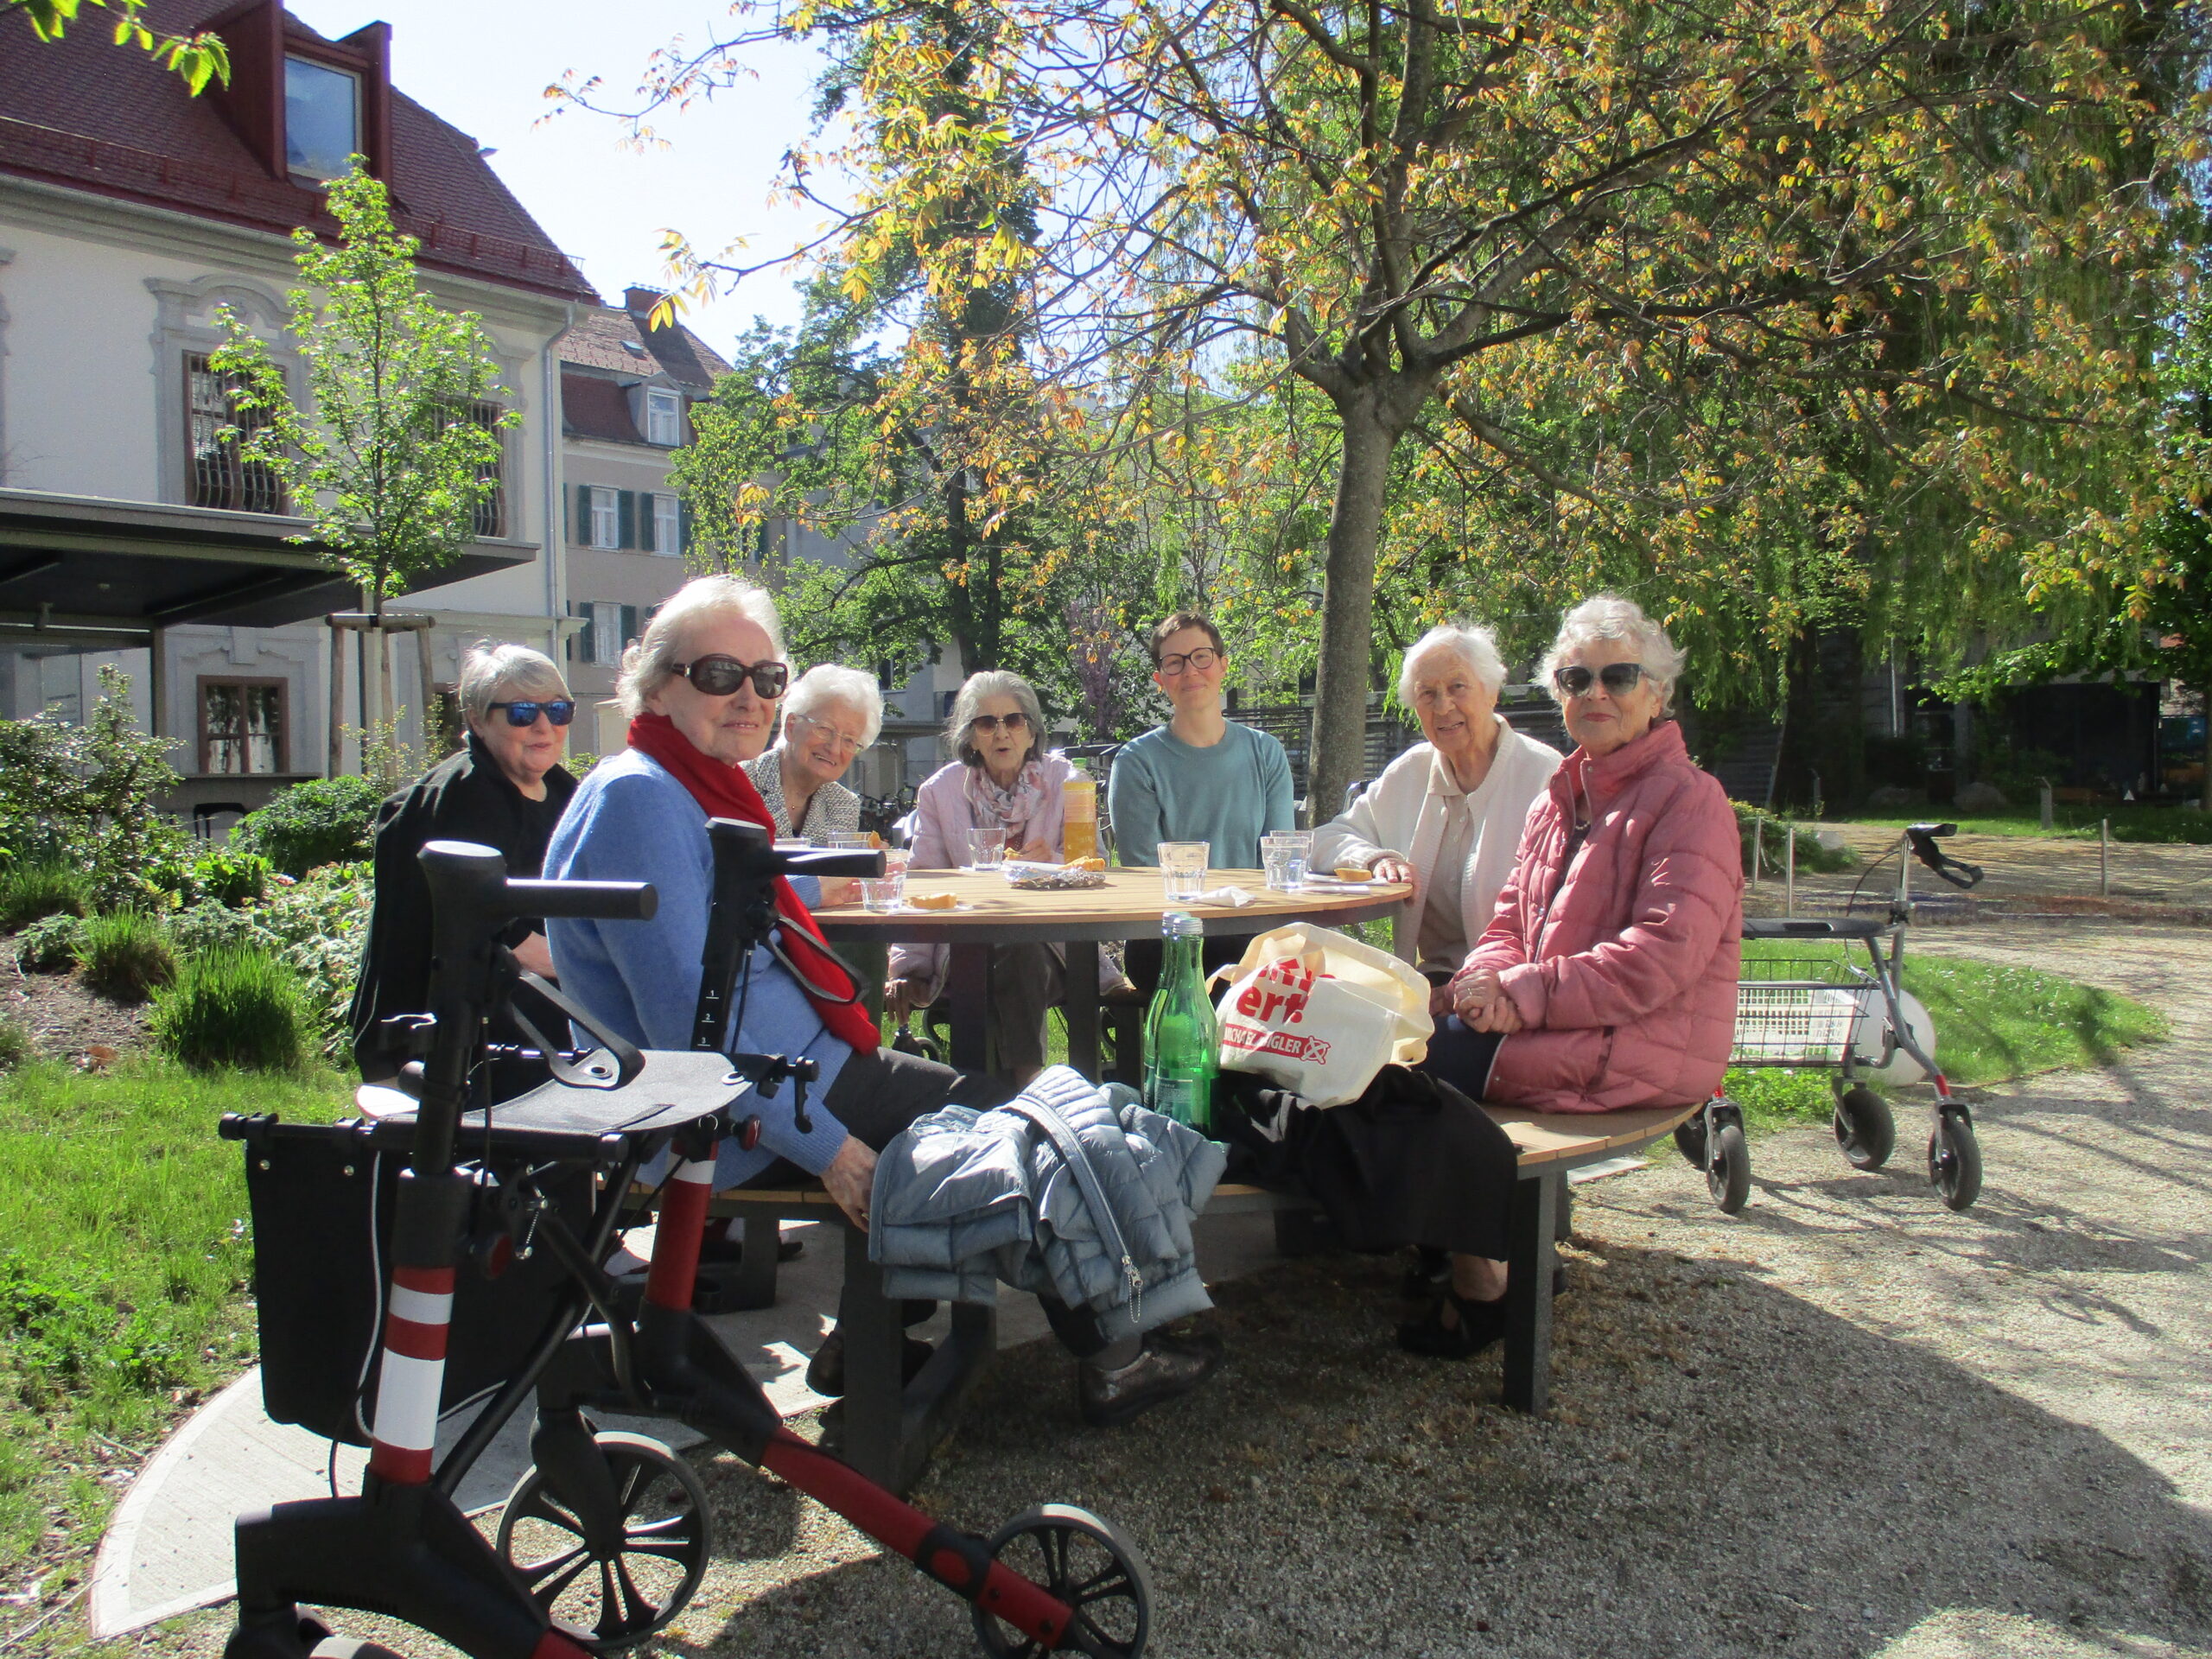 Sechs Senior:innen sitzen mit einer Betreuerin an einem runden Tisch und picknicken.